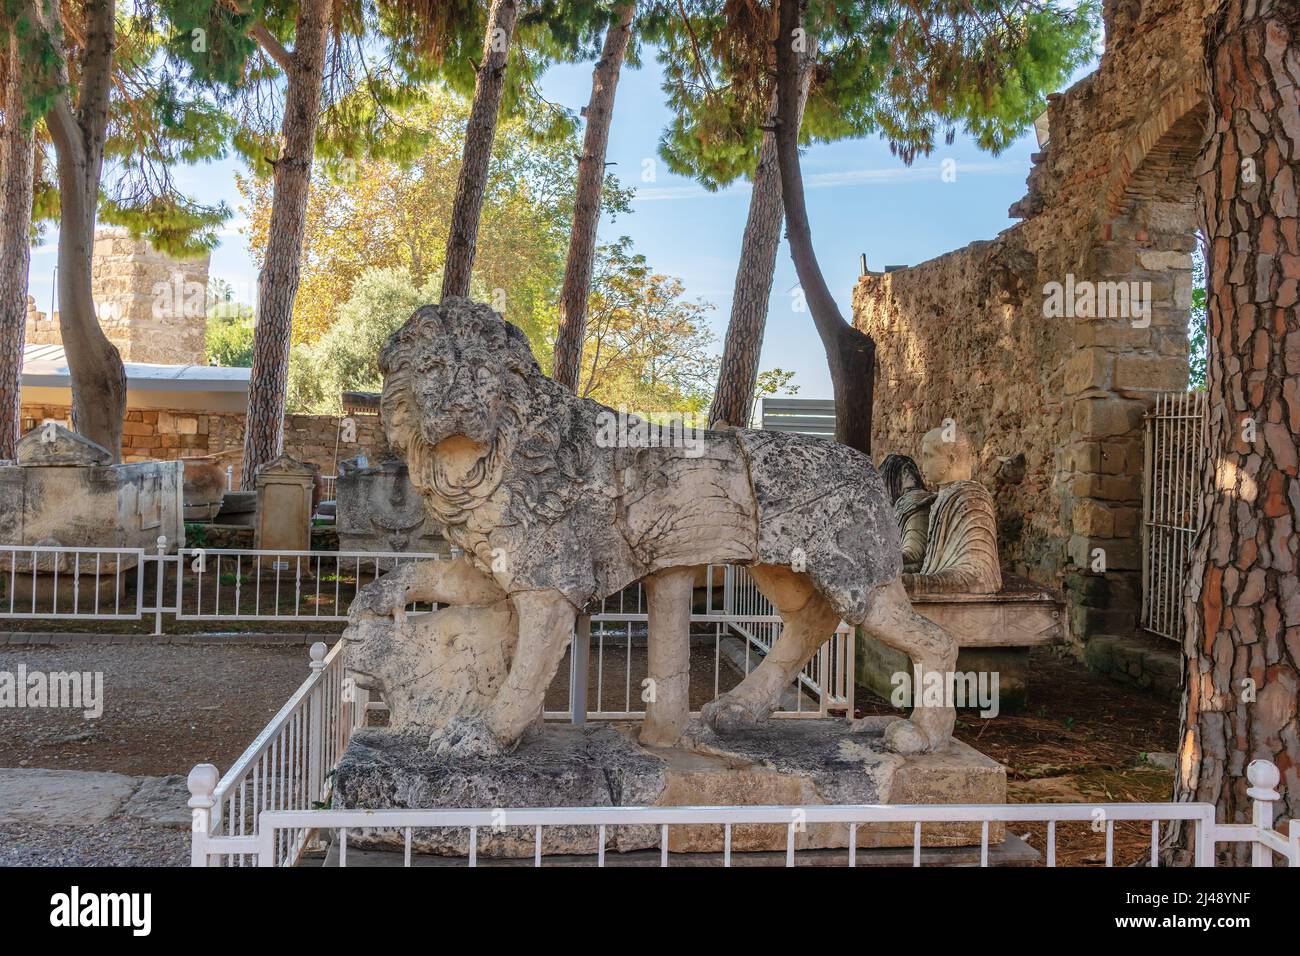 Antico monumento sarcofagi romano statua di marmo di un leone, come esposto nel giardino del Museo Archeologico a lato. Foto Stock